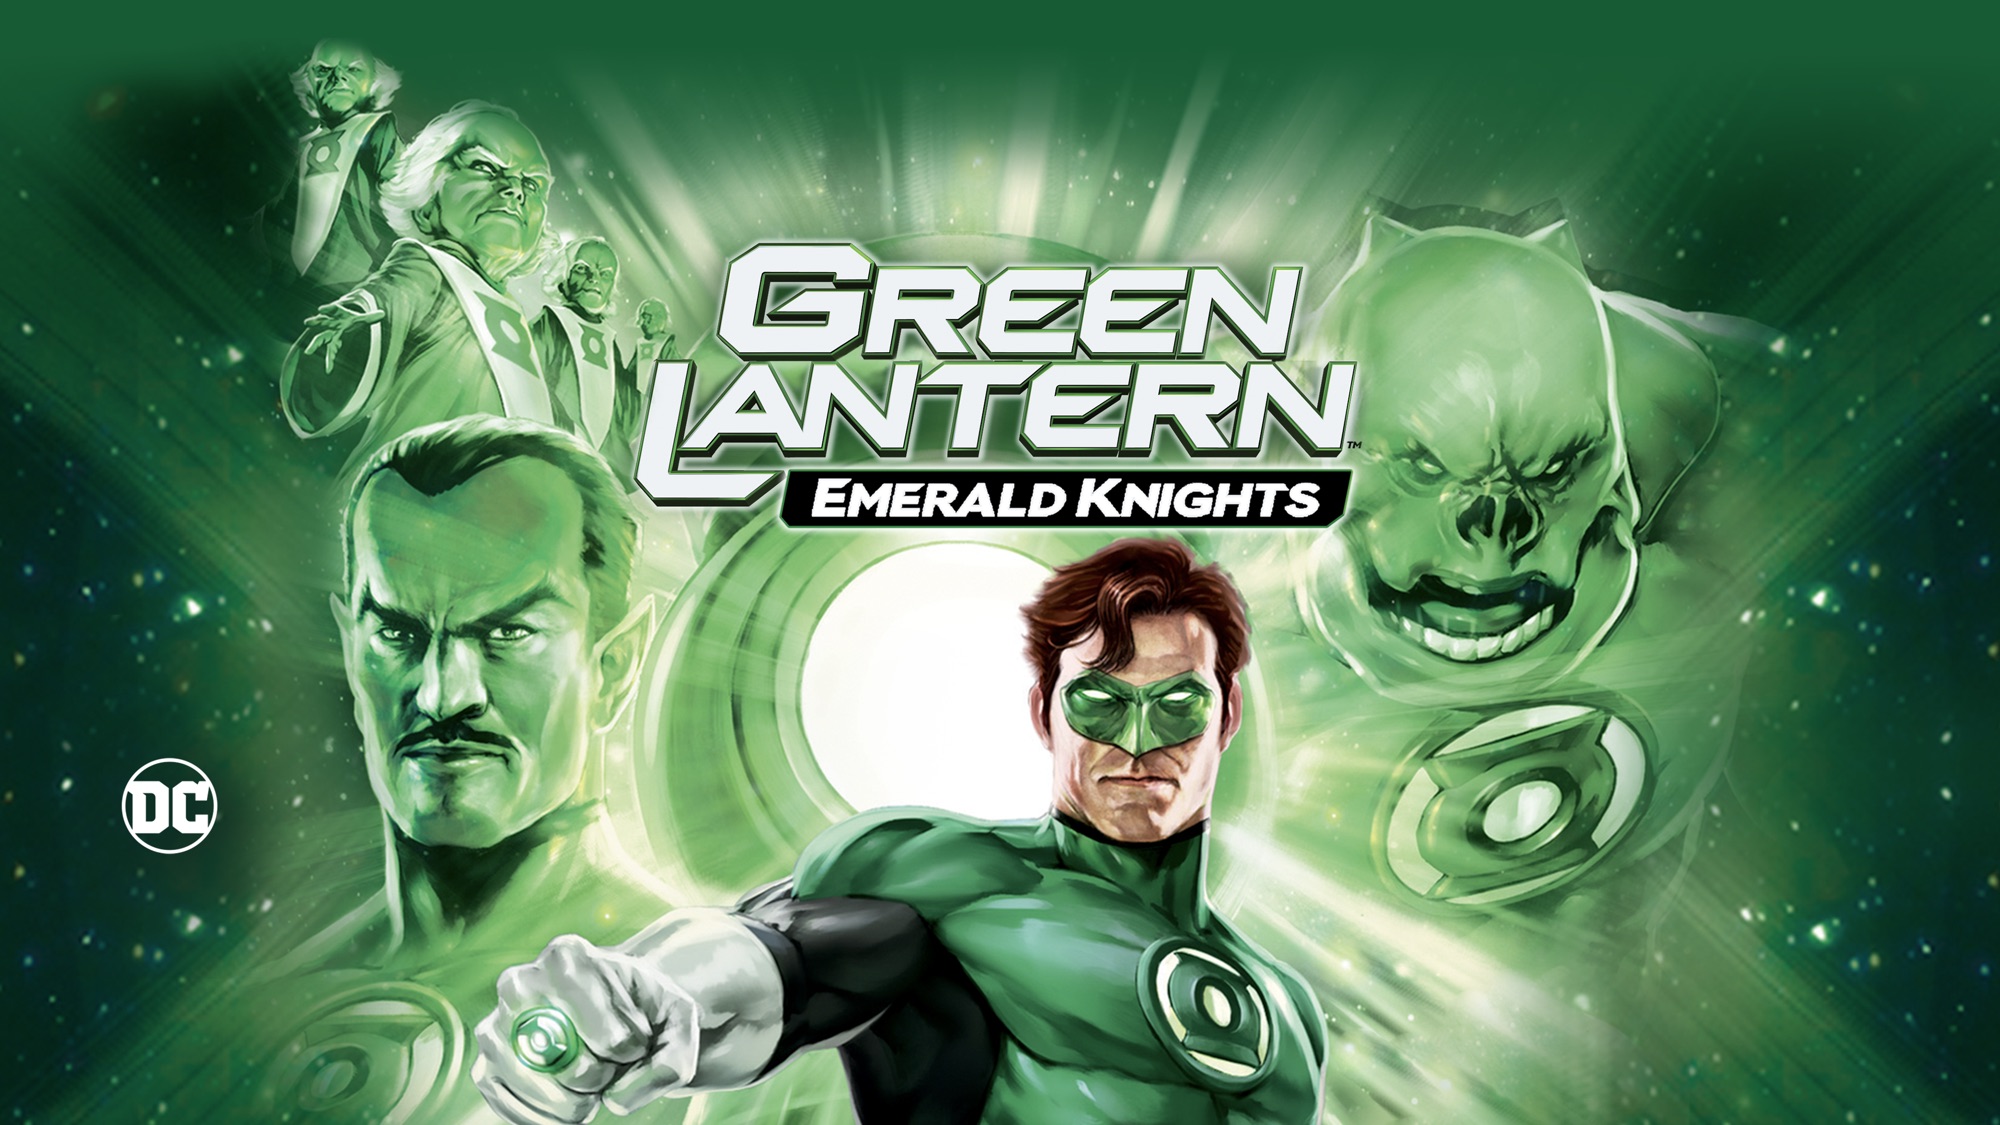 495120 скачать обои кино, зелёный фонарь: изумрудные рыцари, зелёный фонарь, хэл джордан, киловог (dc comics), синестро (dc comics), зеленый фонарь - заставки и картинки бесплатно